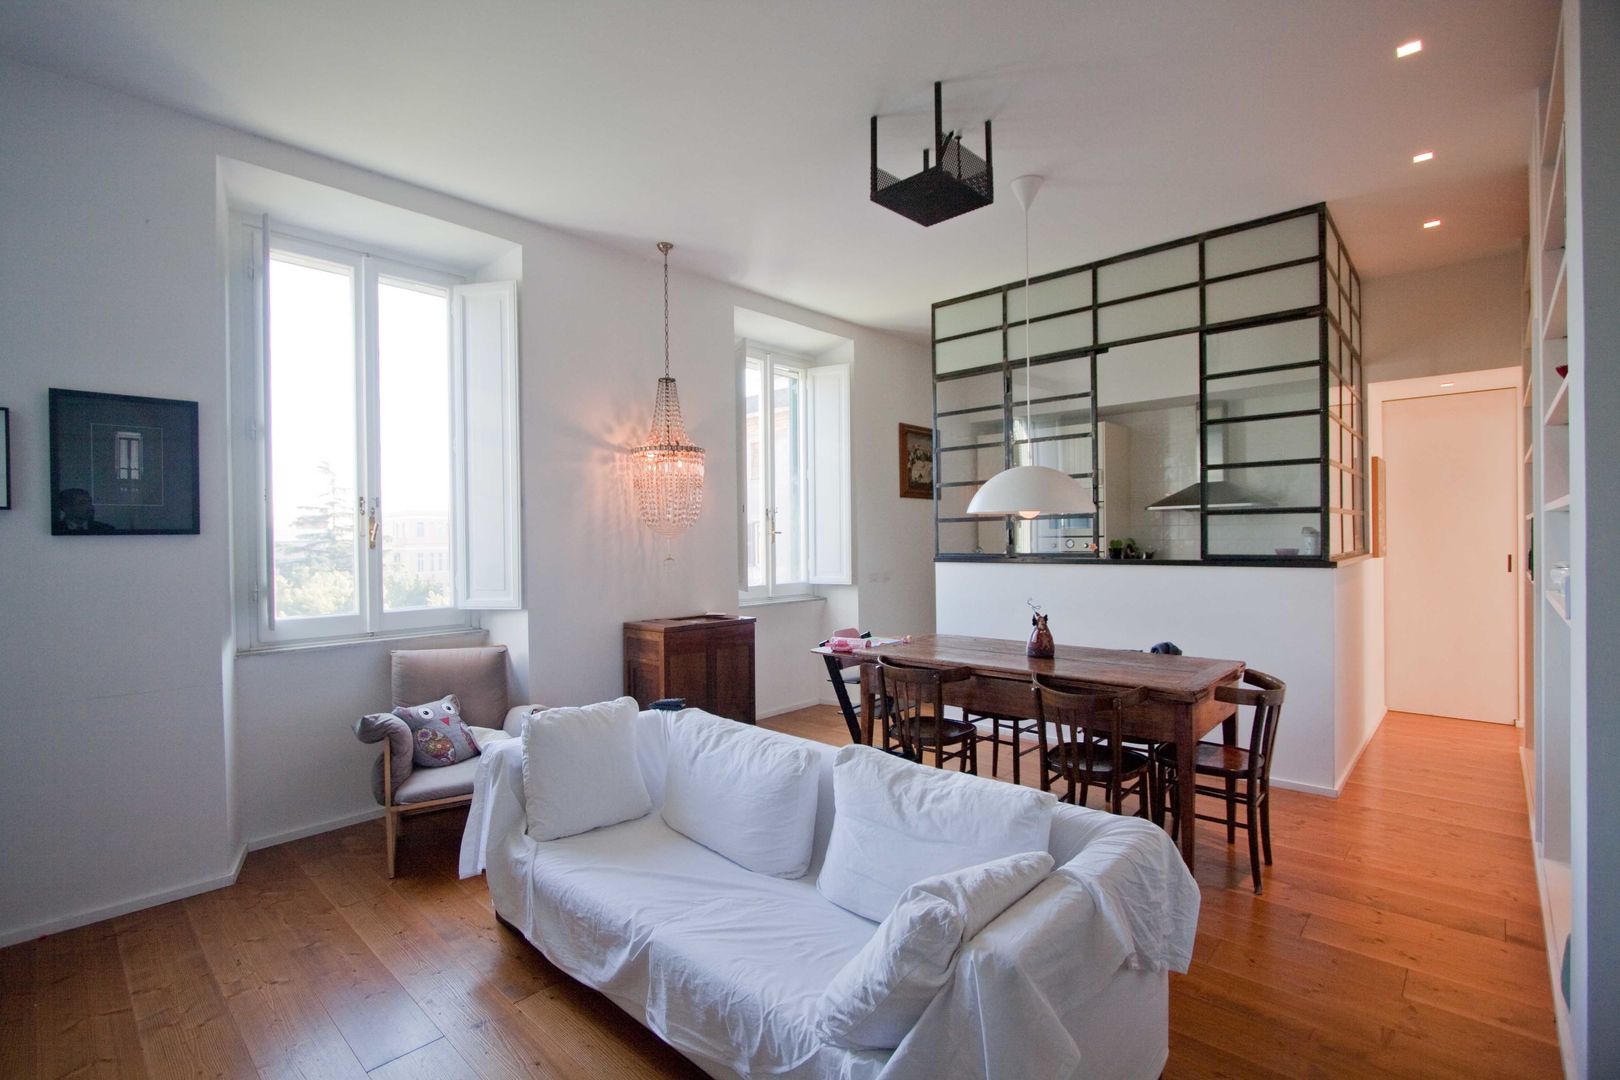 Casa Certosa: All'appartamento un carattere luminoso e moderno, Anomia Studio Anomia Studio Industrial style living room